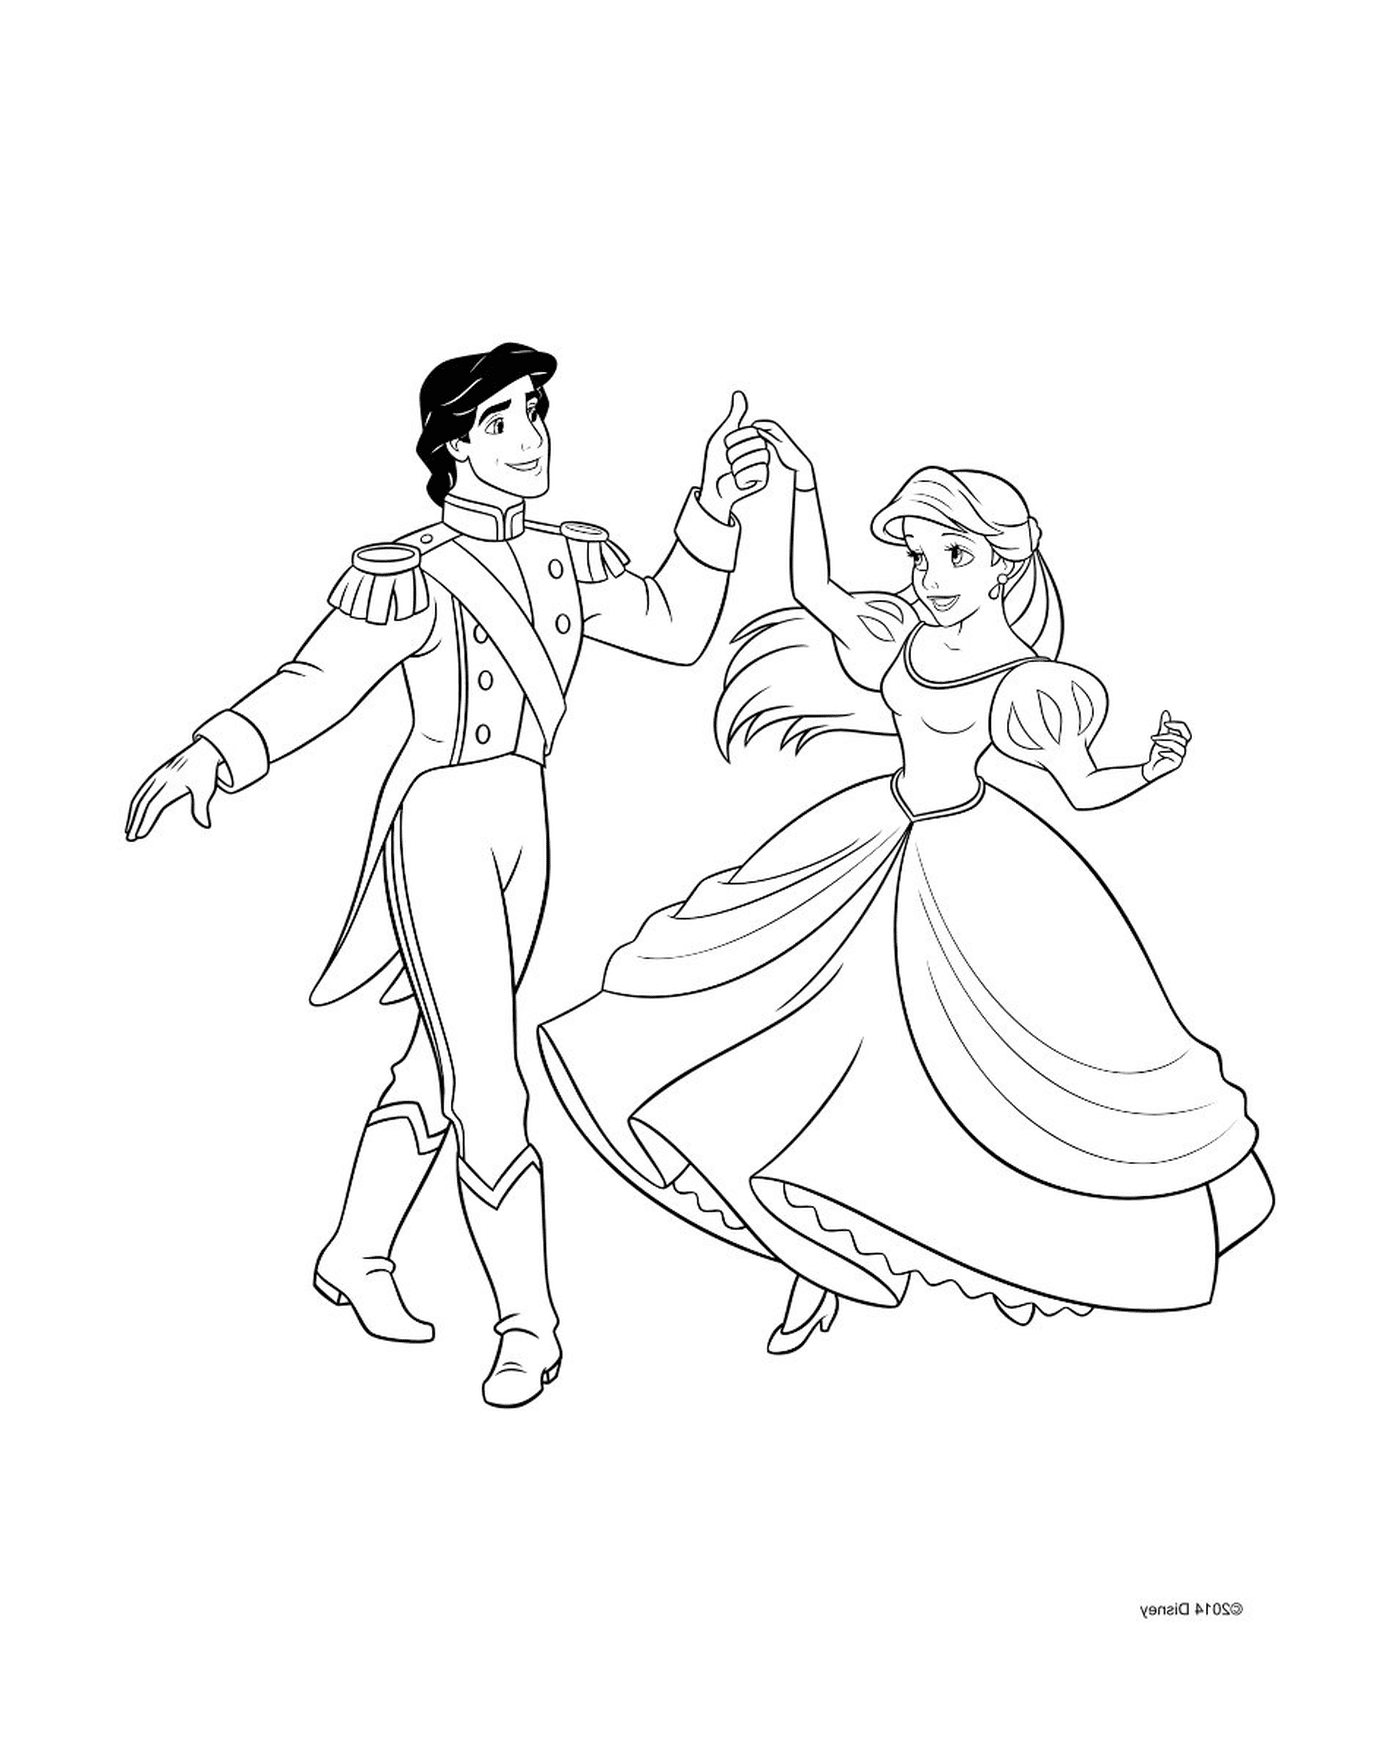   Un homme et une femme qui dansent 